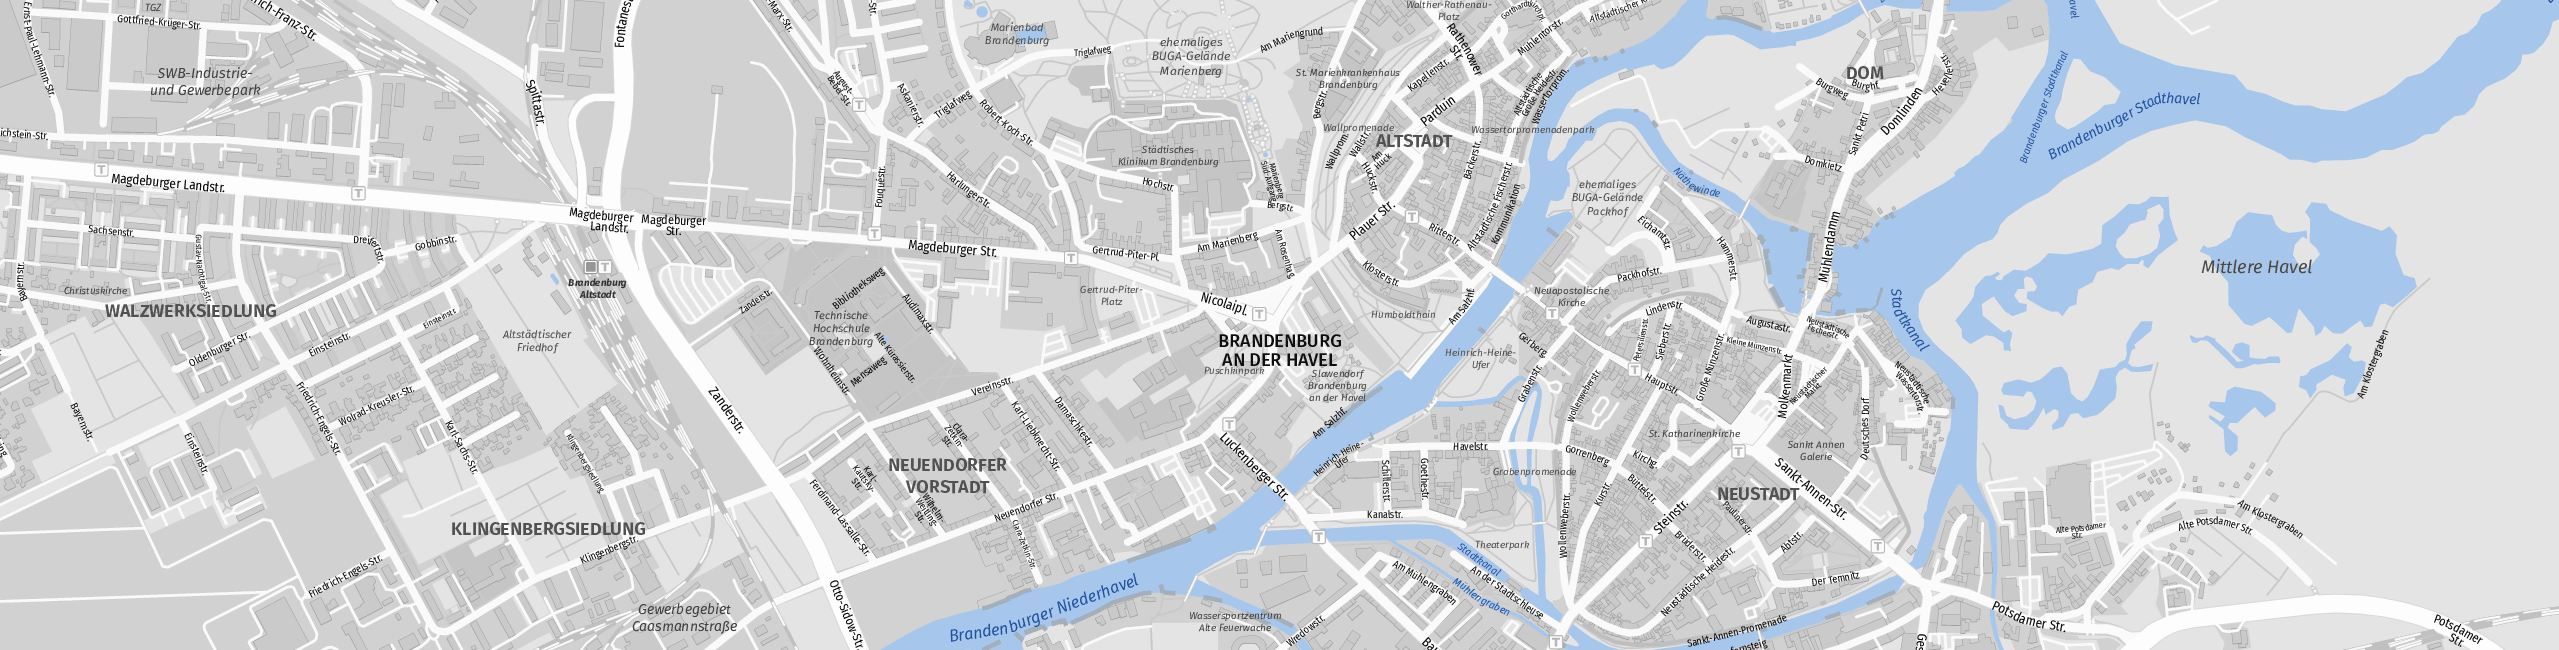 Stadtplan Brandenburg an der Havel zum Downloaden.